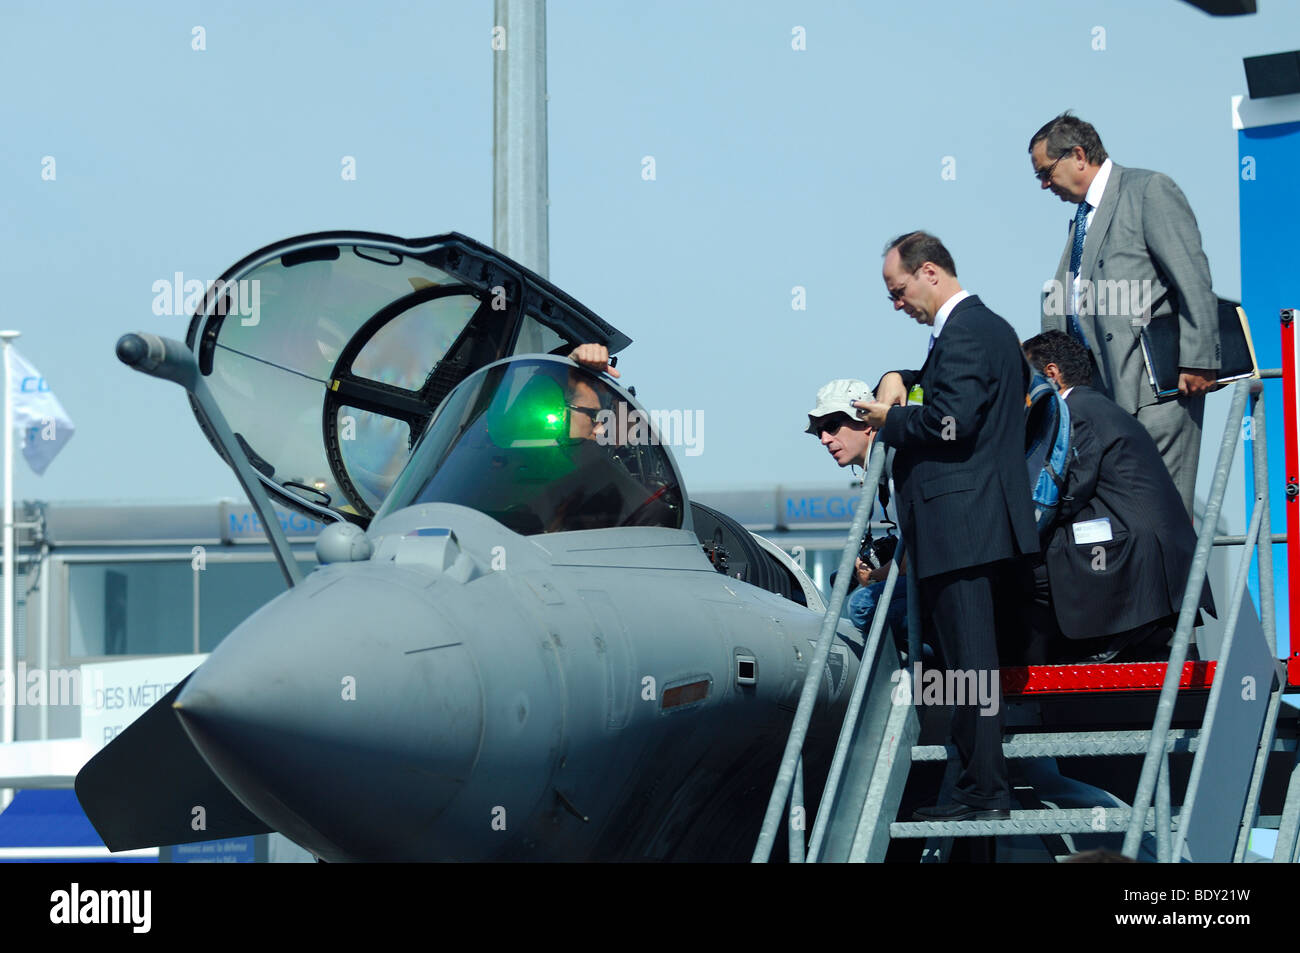 L'avion de combat français Dassault Rafale B dans la démonstration. Paris Le Bourget 2009. Groupe d'hommes discutant Banque D'Images